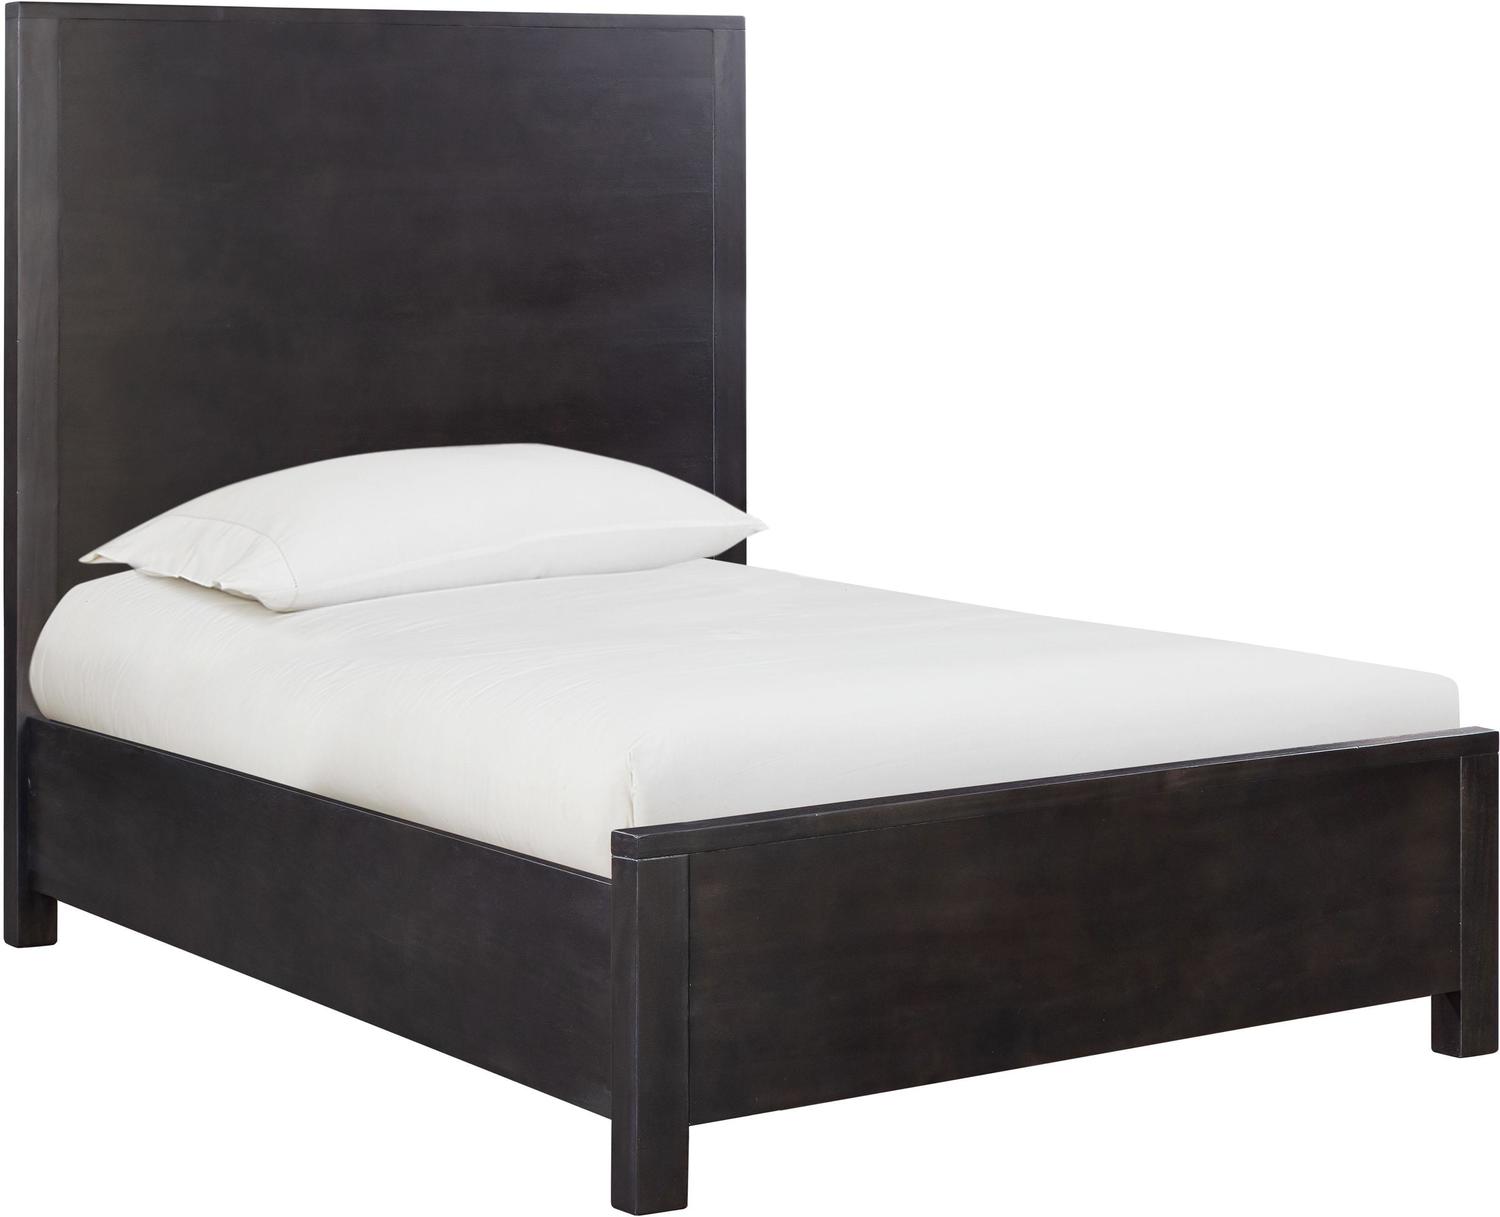 platform bed frame queen Contemporary Design Furniture Beds Black